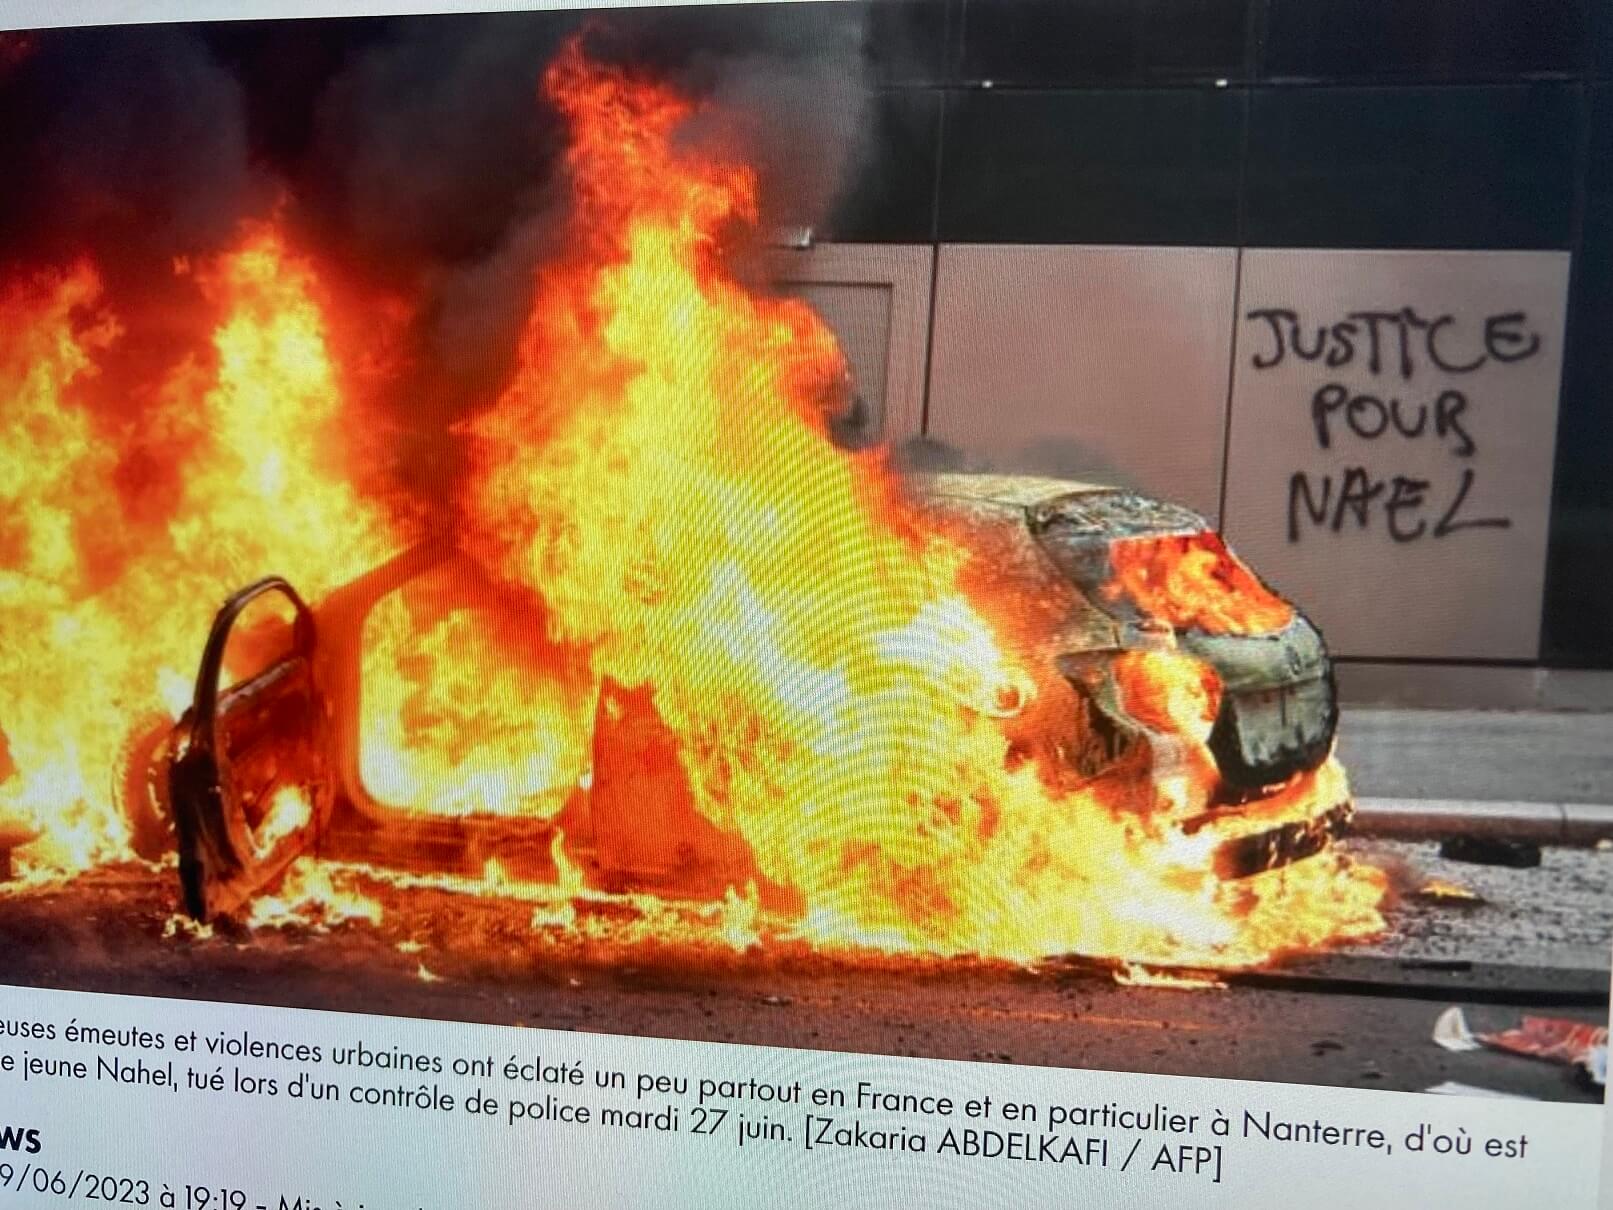 パリ最新情報「仏警察による少年射殺、深刻な暴動へと拡大。緊張が続くパリ郊外」